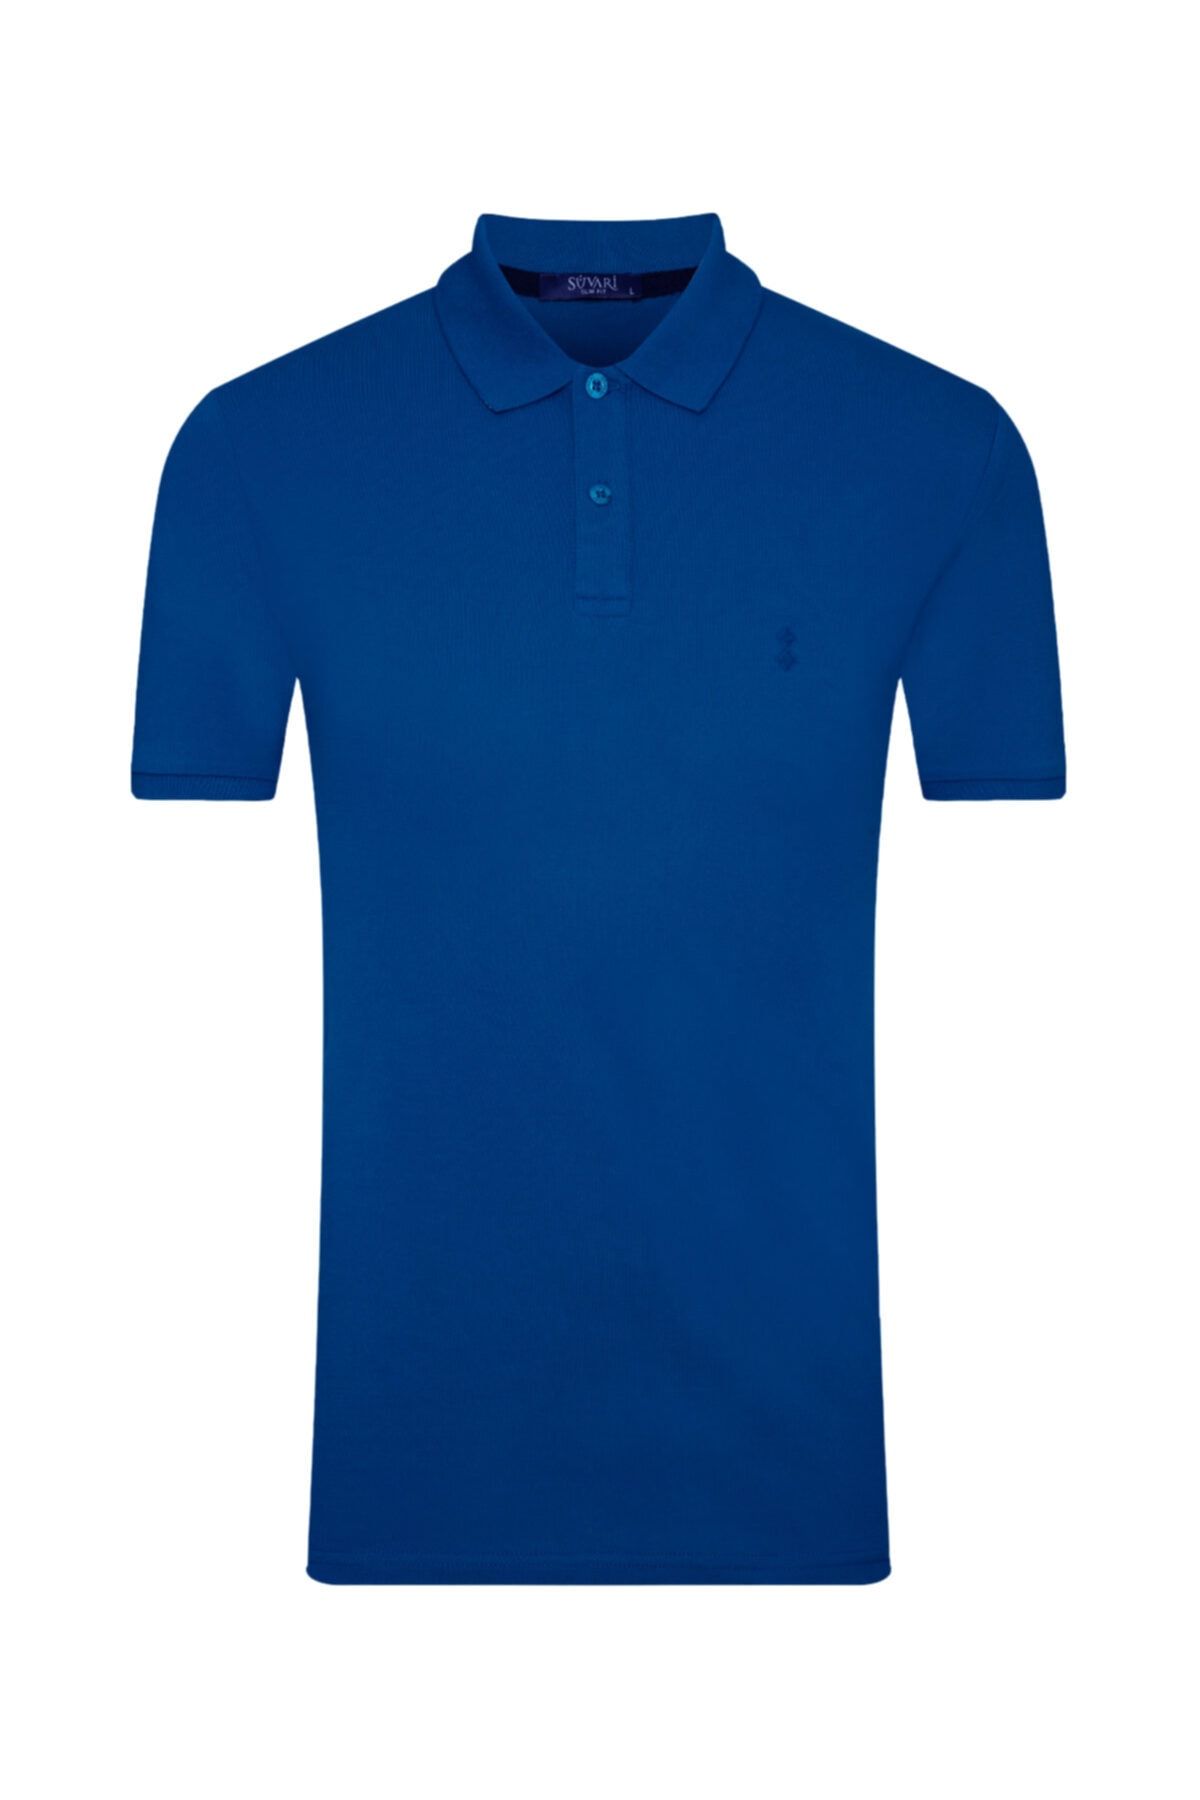 SÜVARİ Erkek Mavi Slim Fit Polo Yaka T-shirt